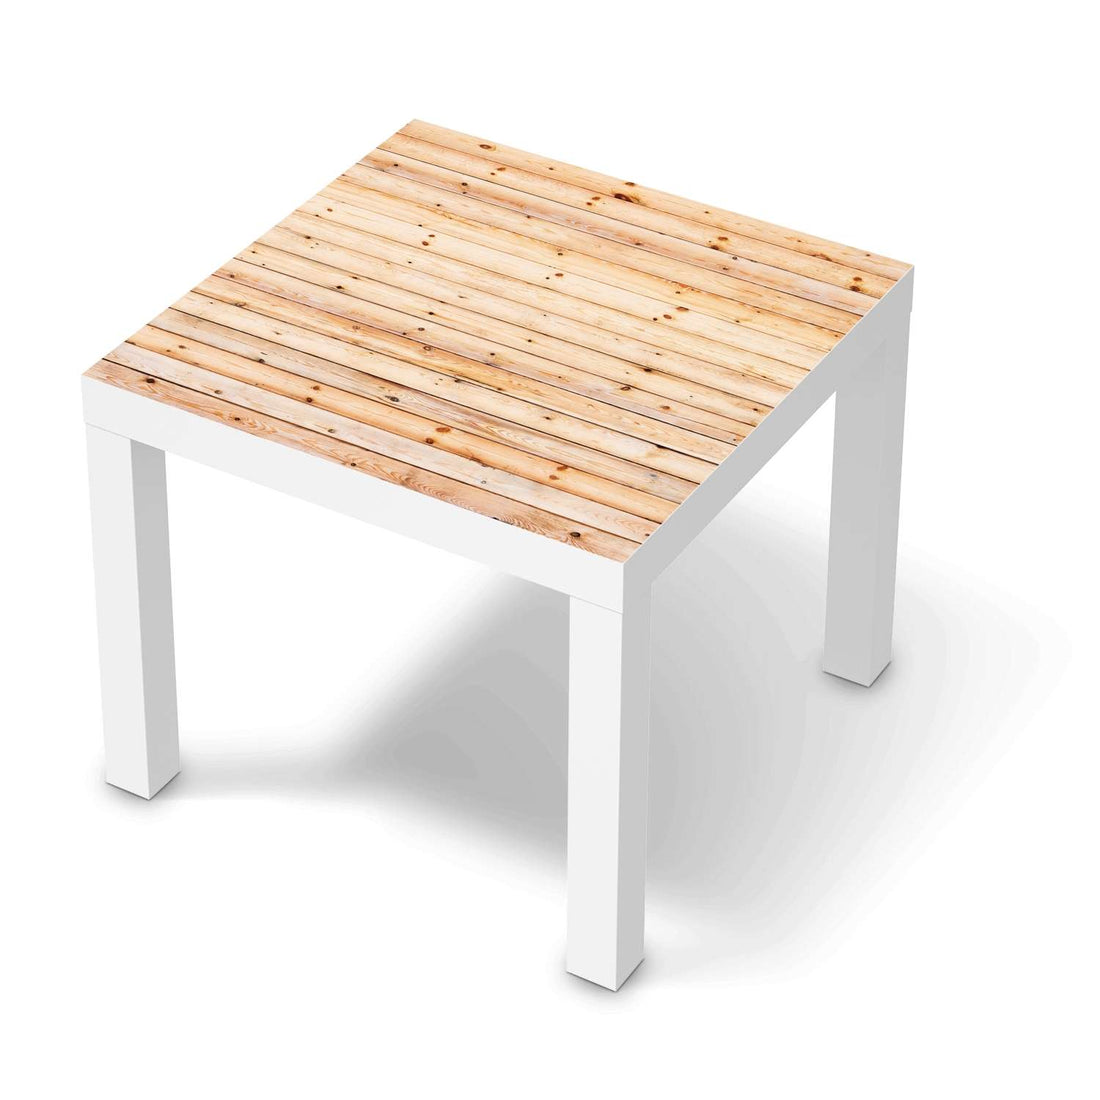 Möbelfolie Bright Planks - IKEA Lack Tisch 55x55 cm - weiss